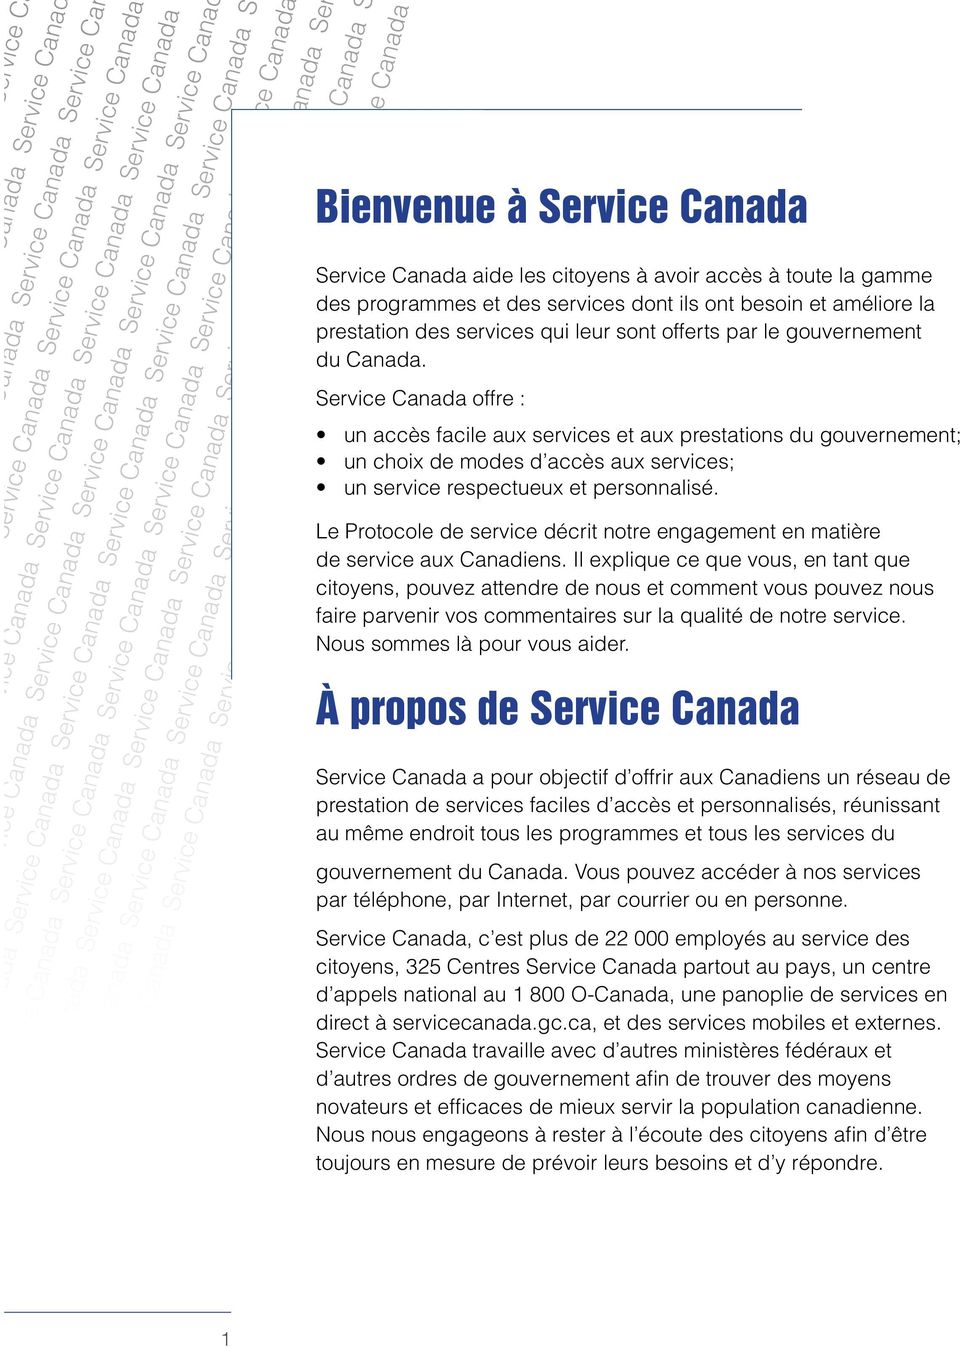 rvice Canada offre : un accès facile aux services et aux prestations du gouvernement; un choix de modes d accès aux services; un service respectueux et personnalisé.